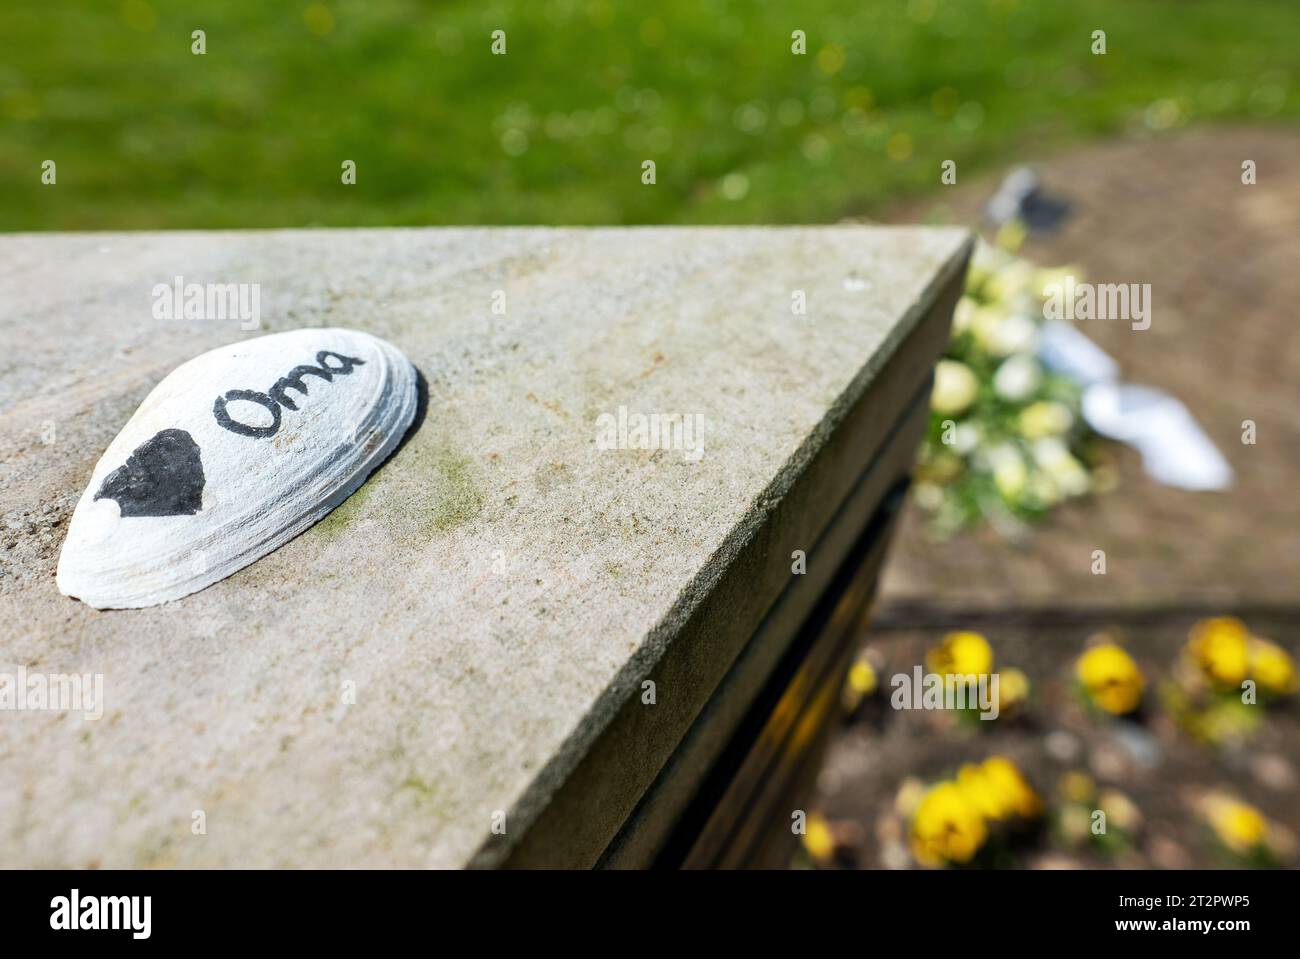 Urnengrab auf dem Friedhof mit Oma (Oma) als Abschied vom Enkelkind auf der Shell. Stockfoto